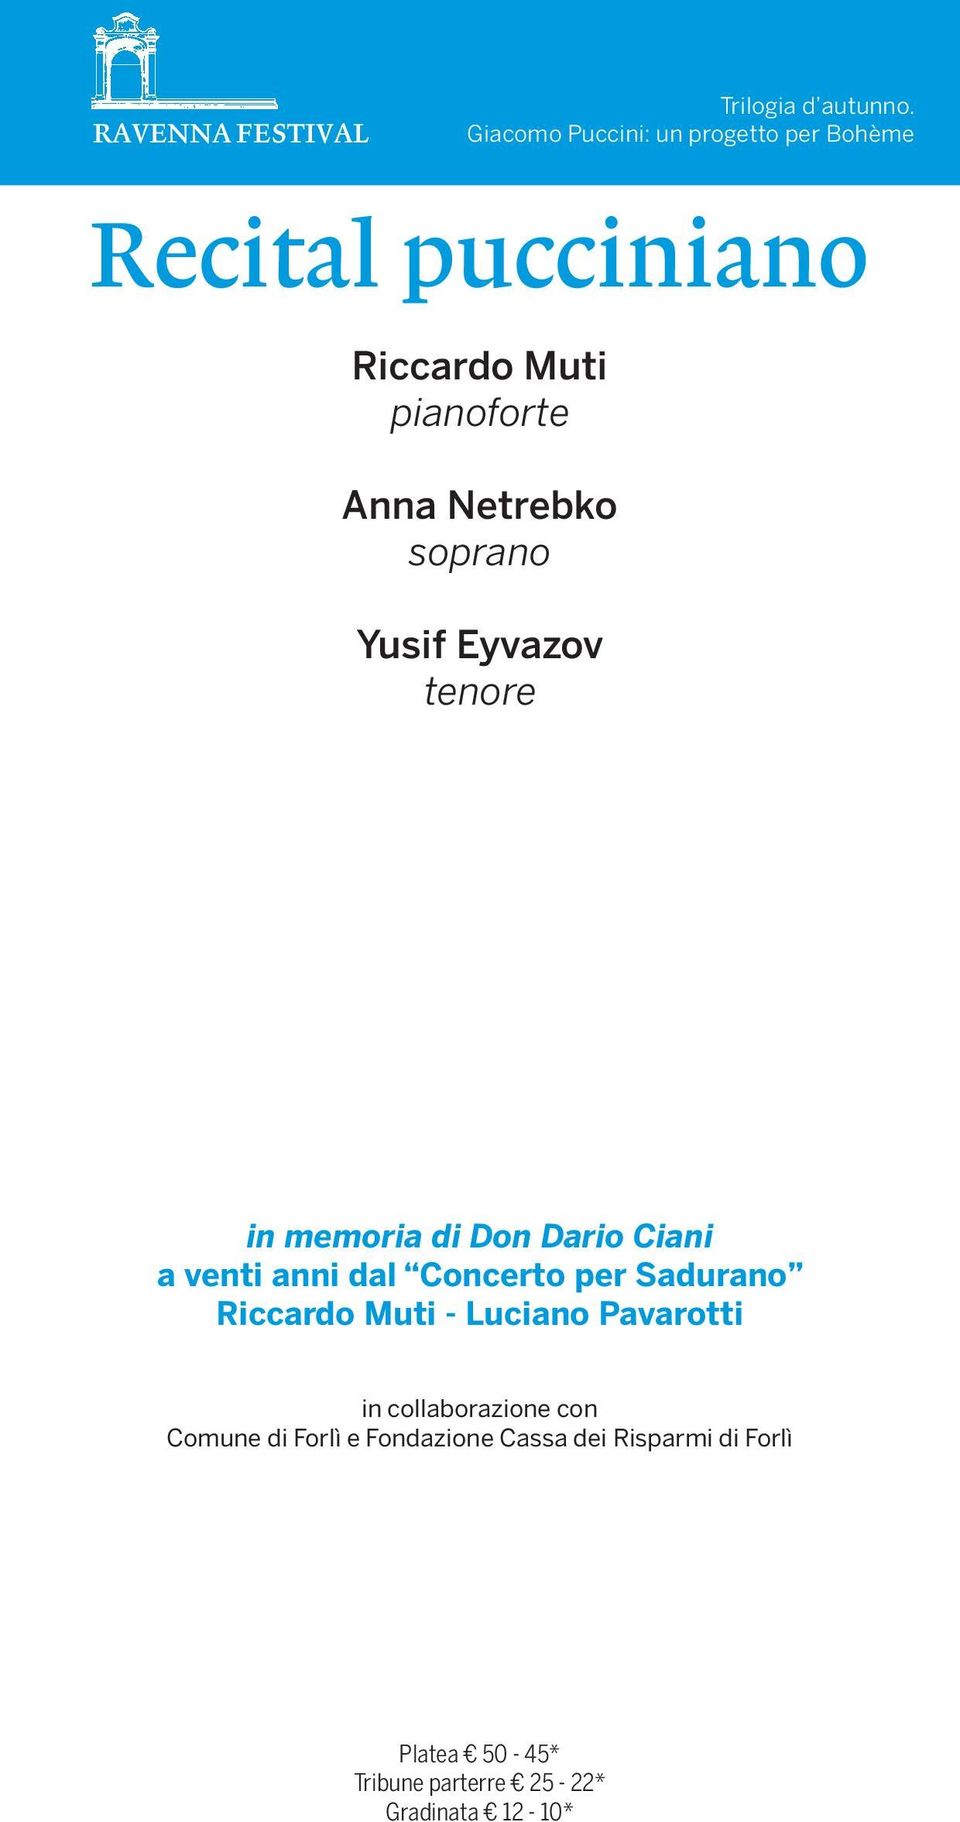 Eyvazov tenore in memoria di Don Dario Ciani a venti anni dal Concerto per Sadurano Riccardo Muti - Luciano Pavarotti